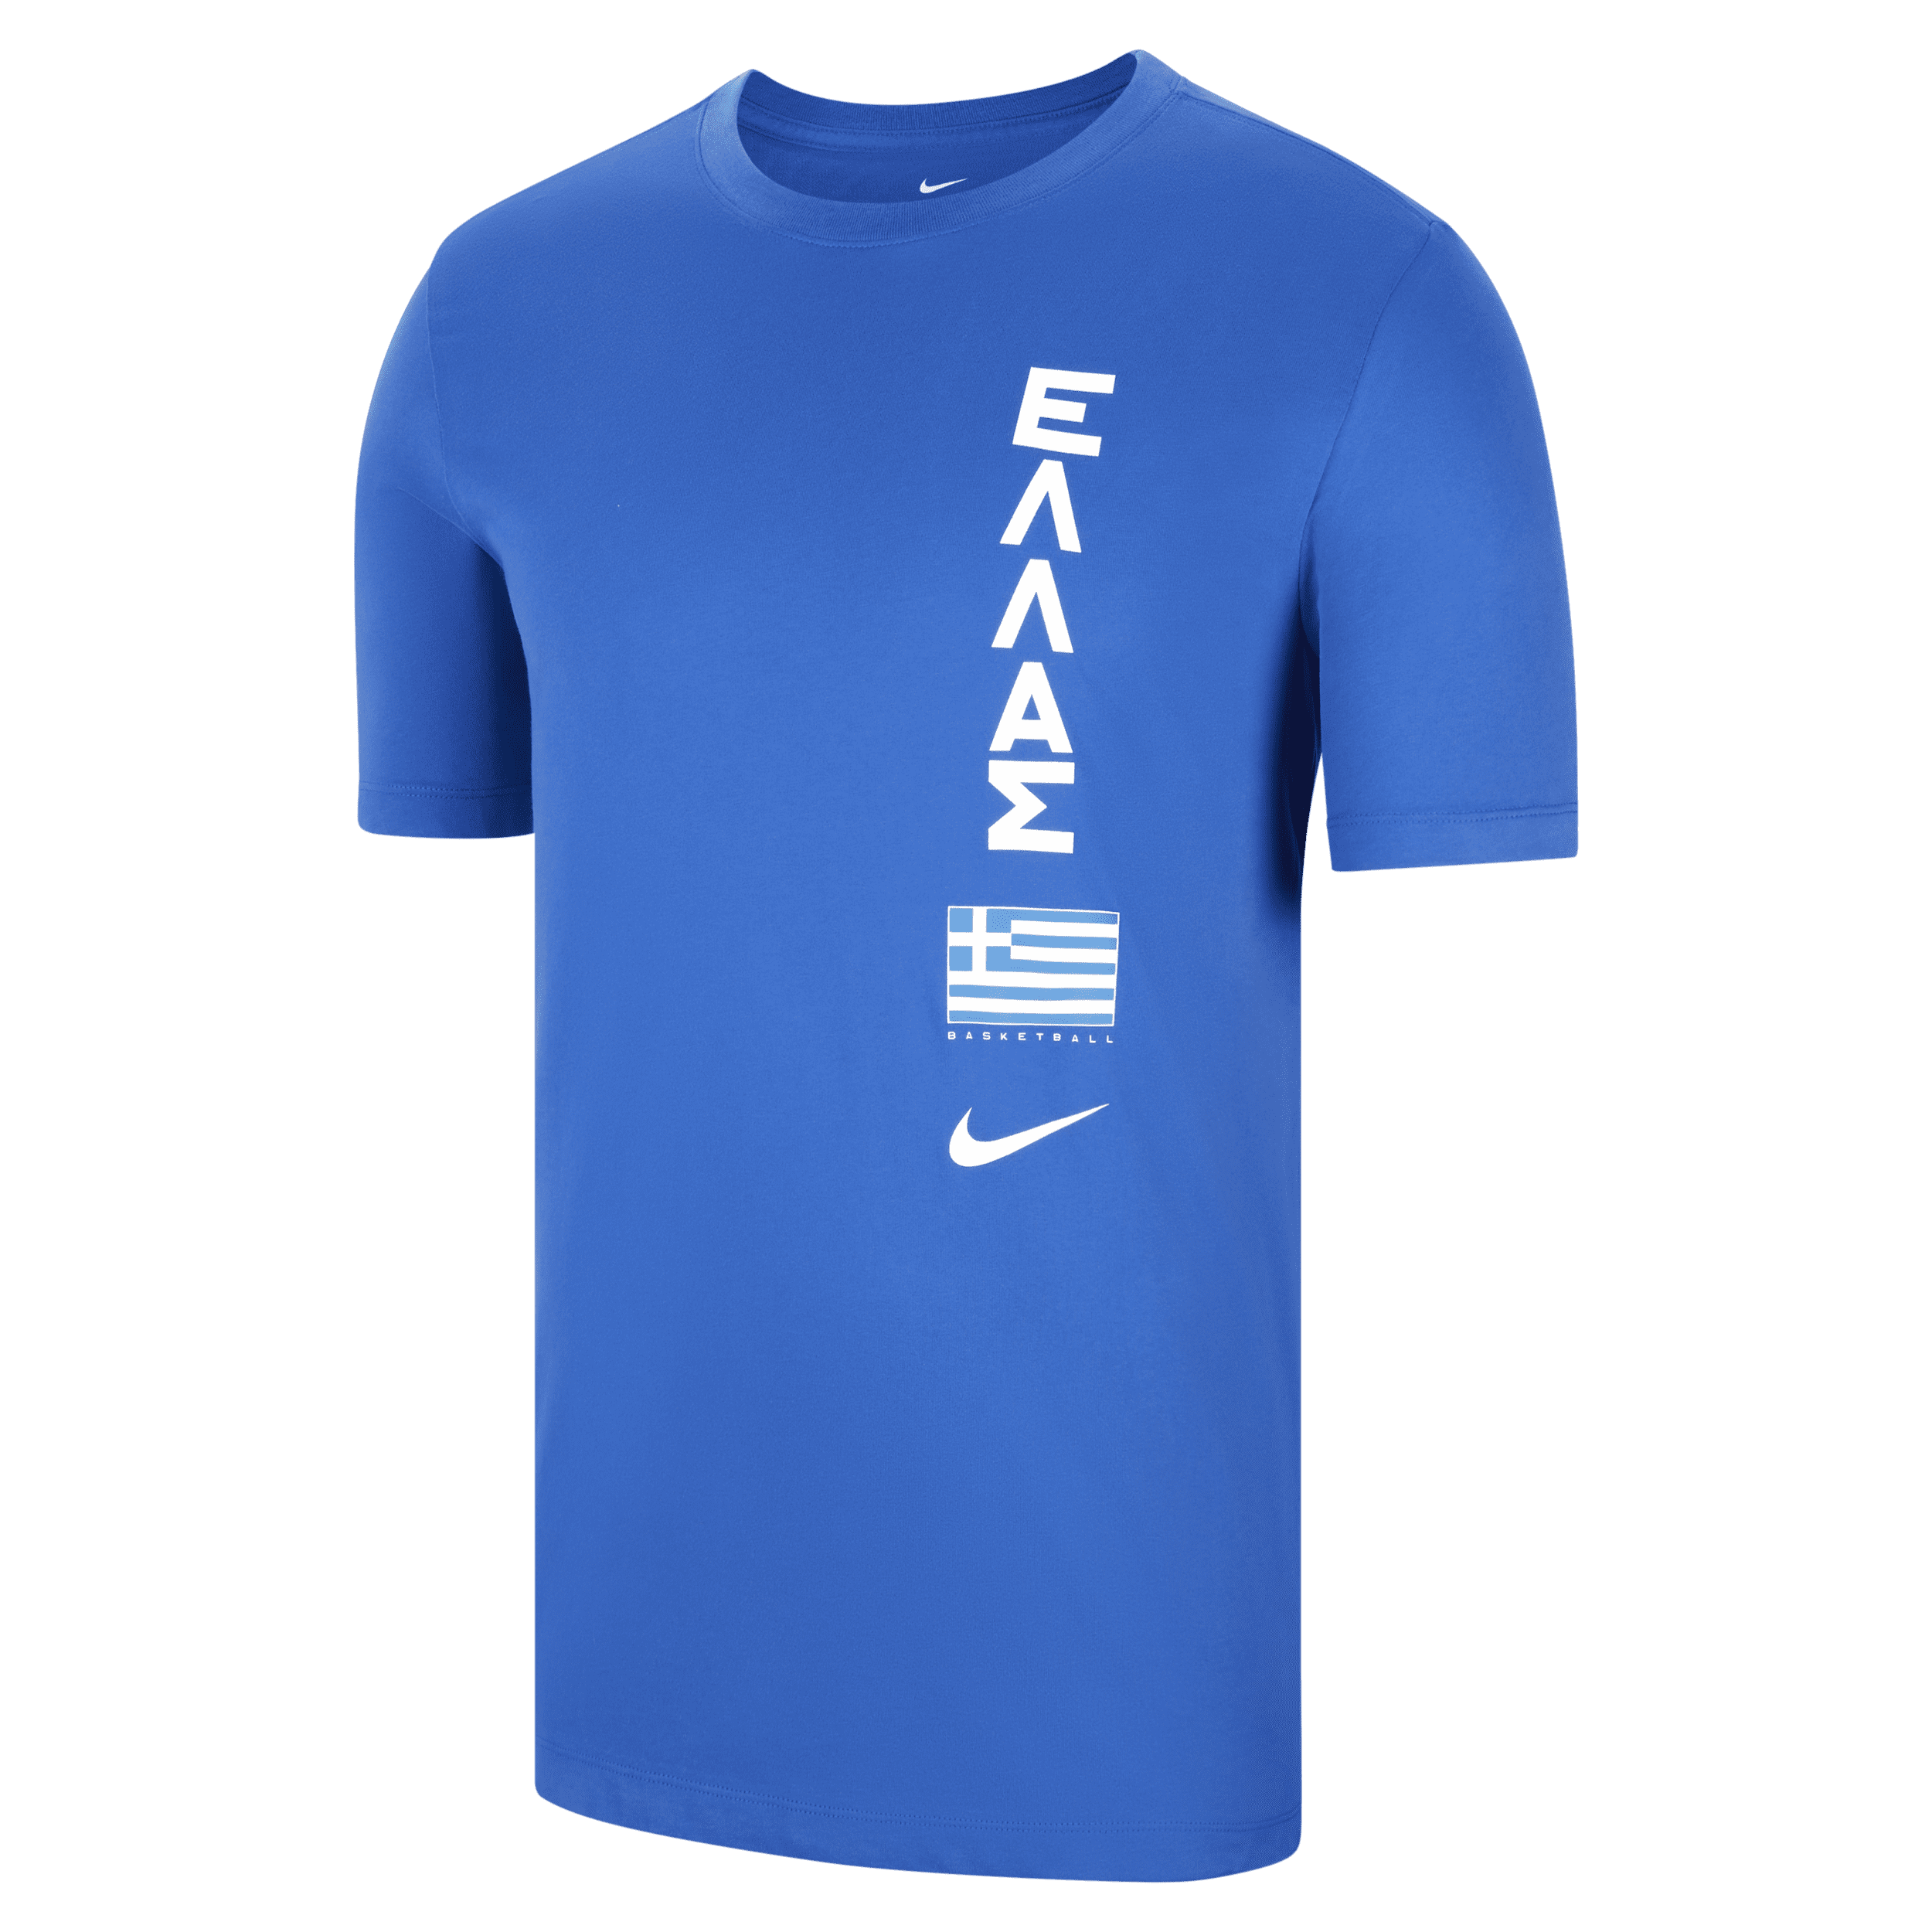 Grækenland Nike Dri-FIT–basketball-T-shirt til mænd - blå